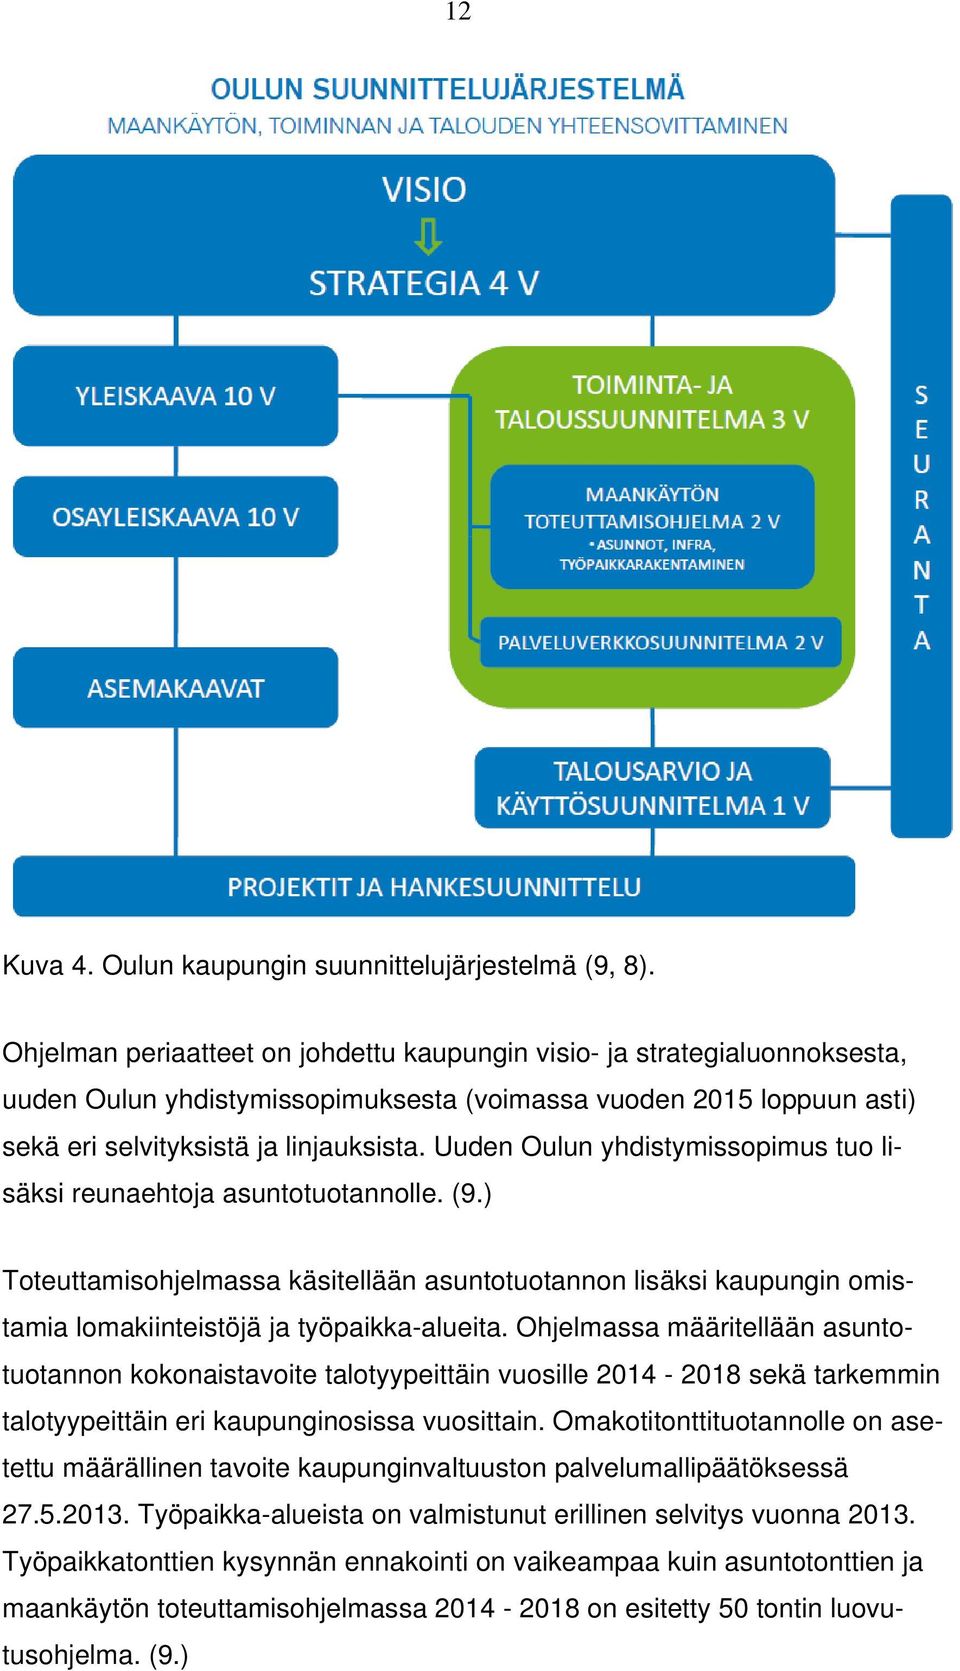 Uuden Oulun yhdistymissopimus tuo lisäksi reunaehtoja asuntotuotannolle. (9.) Toteuttamisohjelmassa käsitellään asuntotuotannon lisäksi kaupungin omistamia lomakiinteistöjä ja työpaikka-alueita.